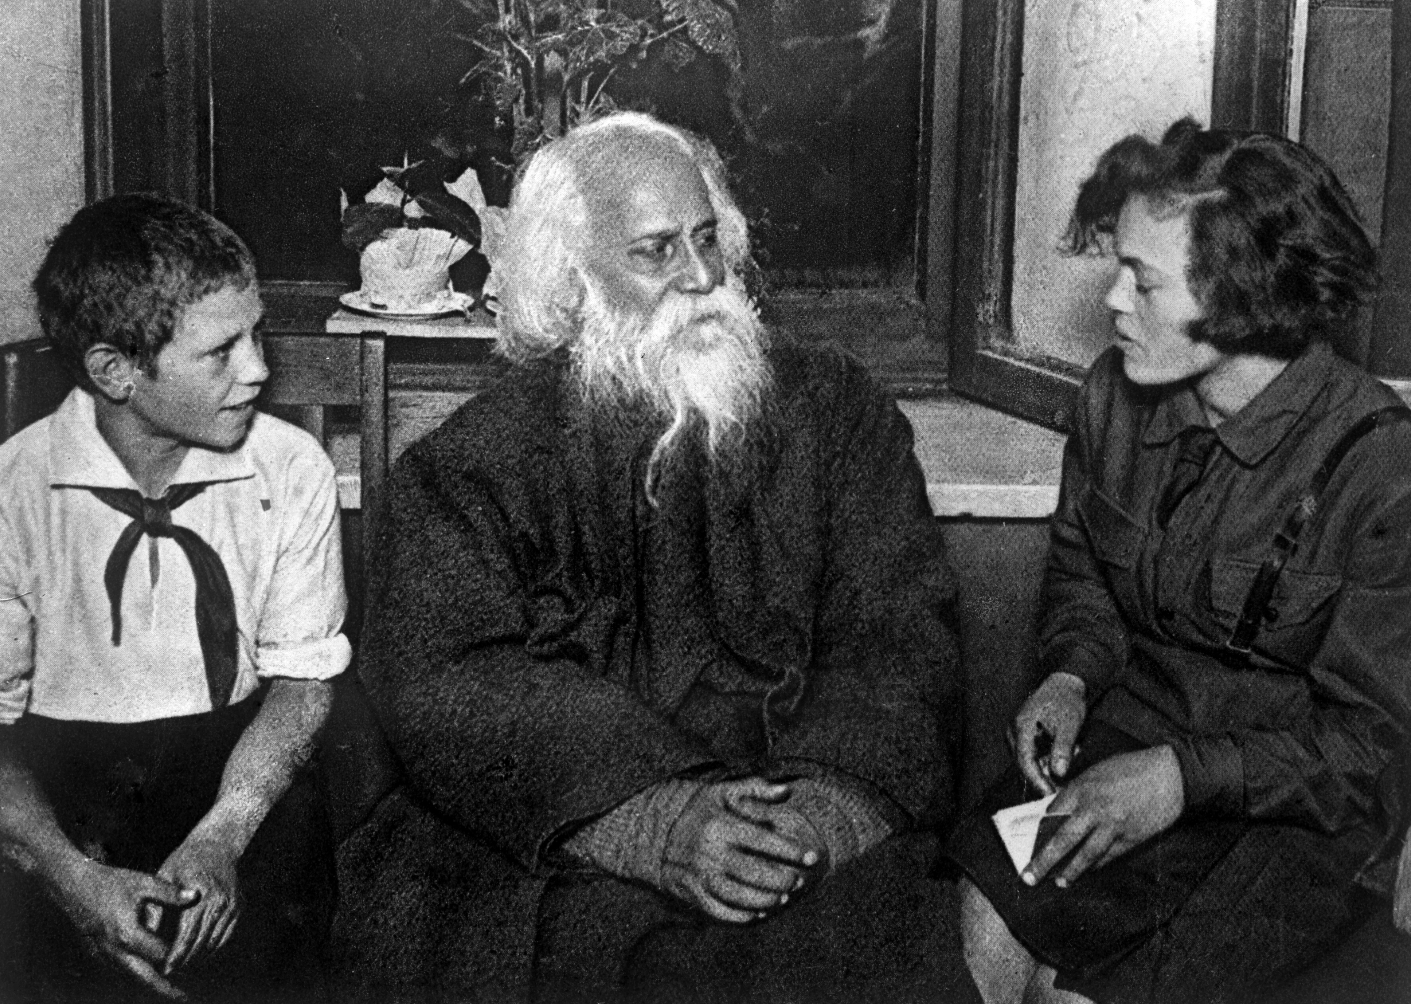  (طاغور مع طلاب مدارس في الاتحاد السوفييتي، أيلول/سبتمبر 1930)